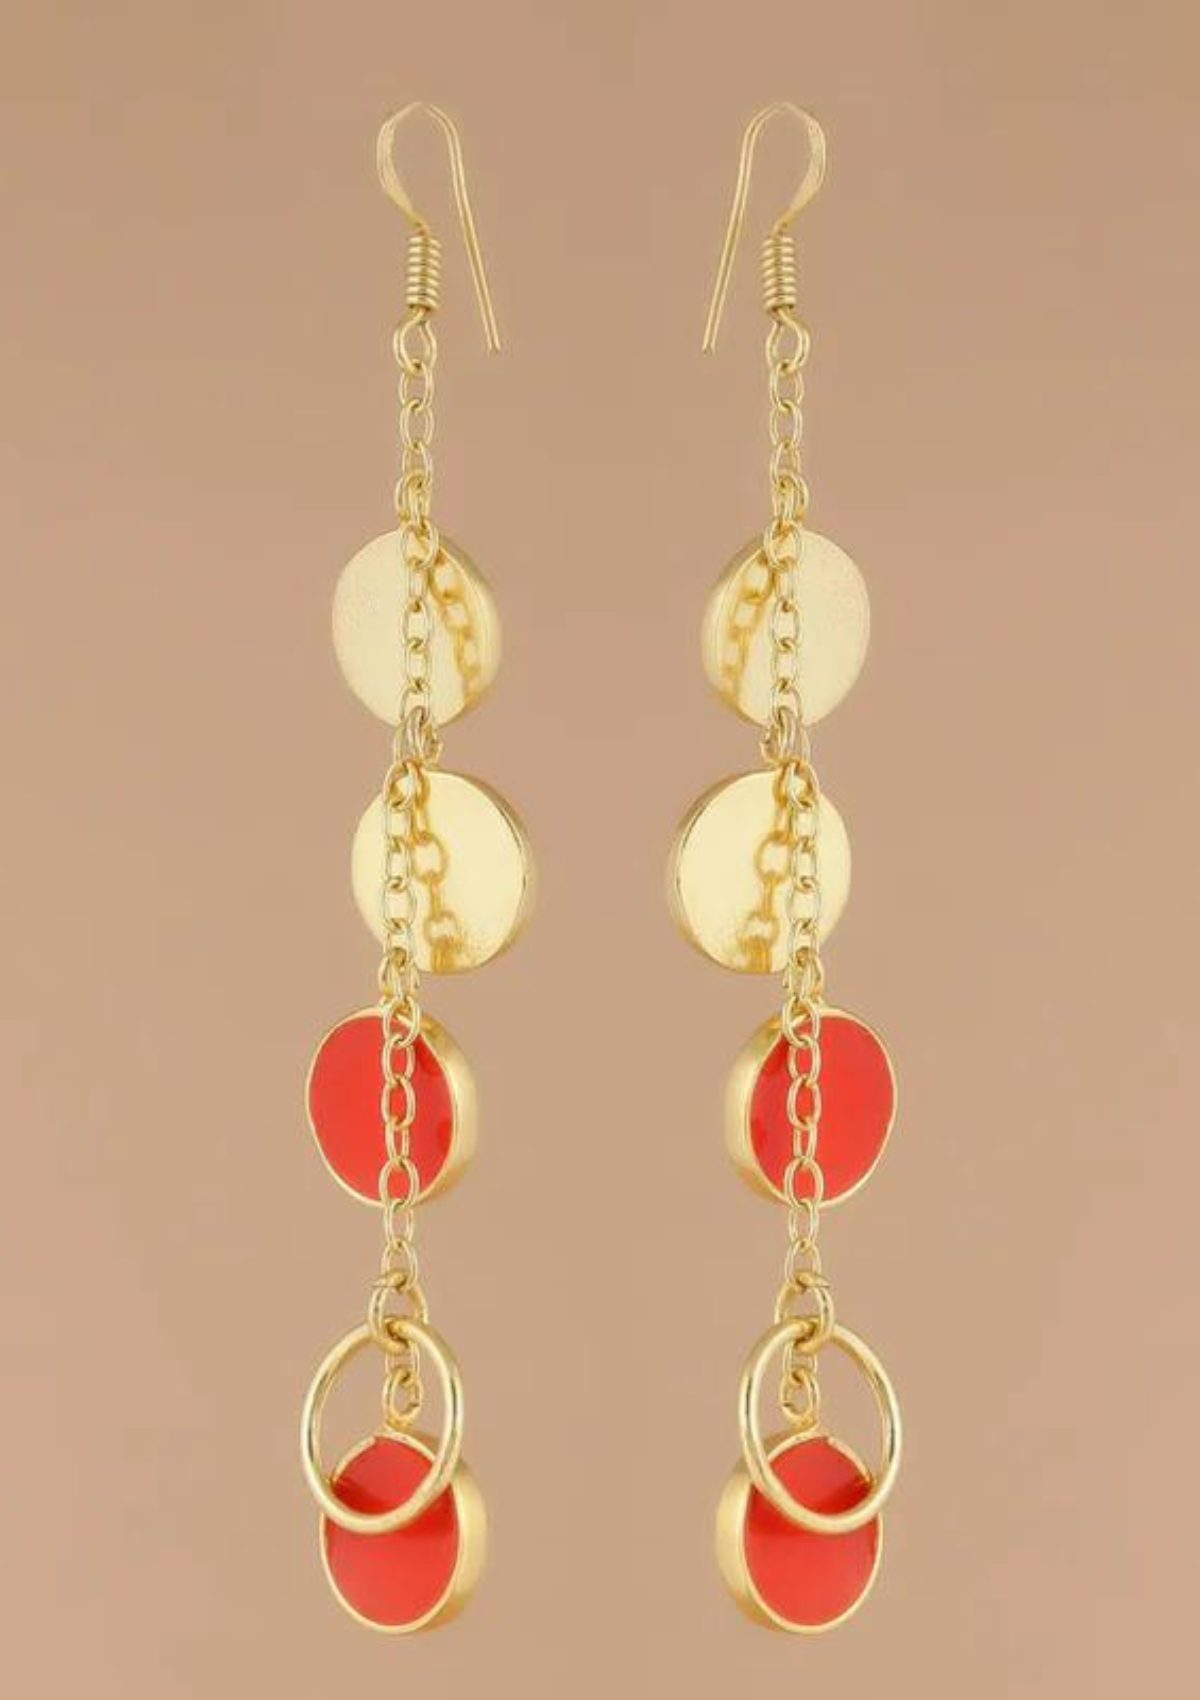 gold bohemian earrings